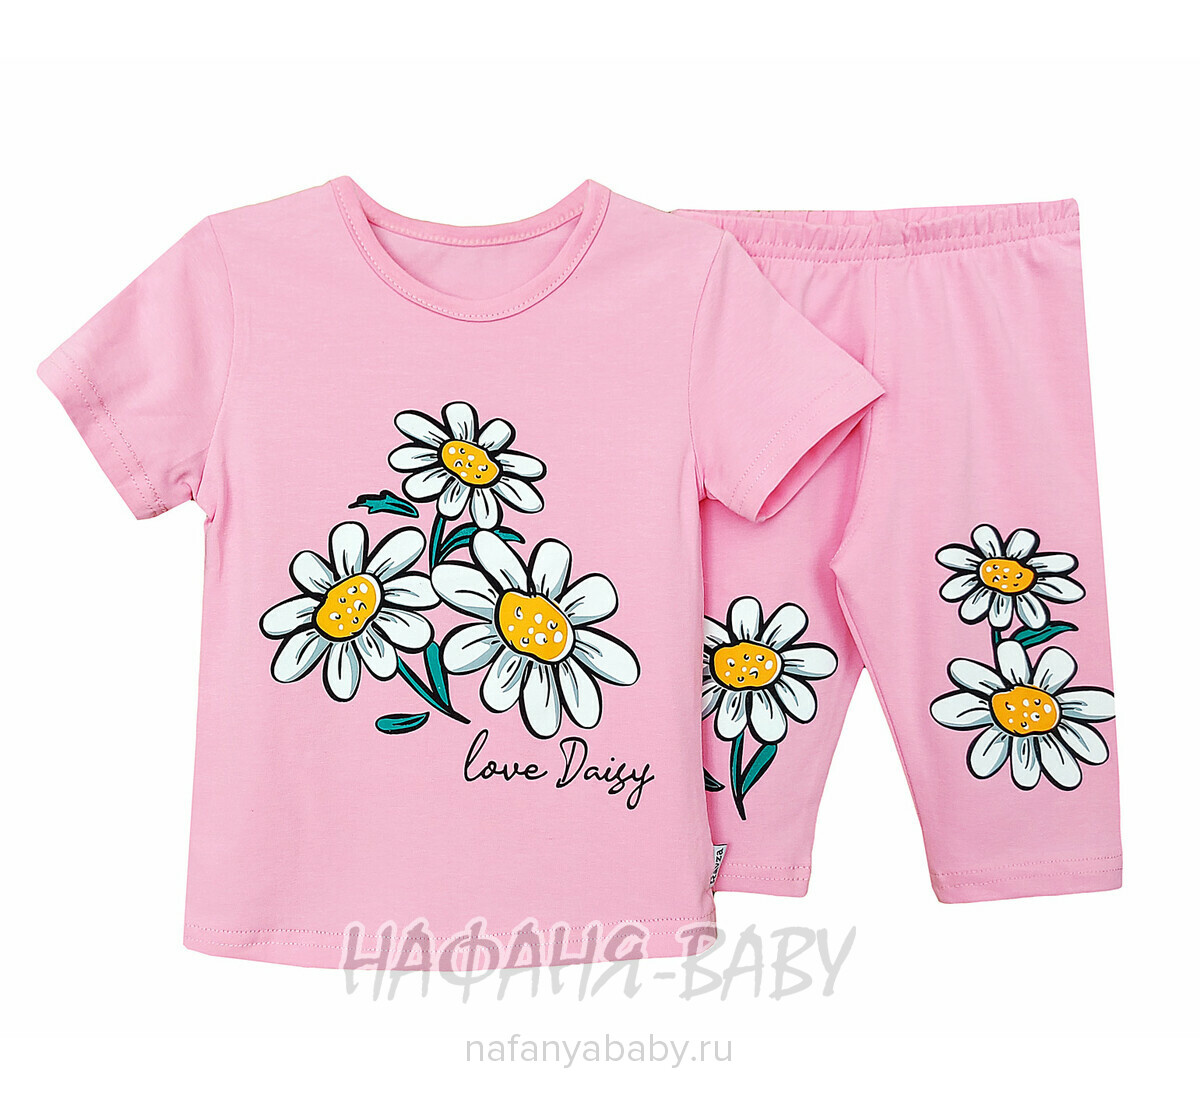 Детский костюм (футболка + лосины) RAVZA арт: 1101, 3-6 лет, цвет розовый, оптом Турция